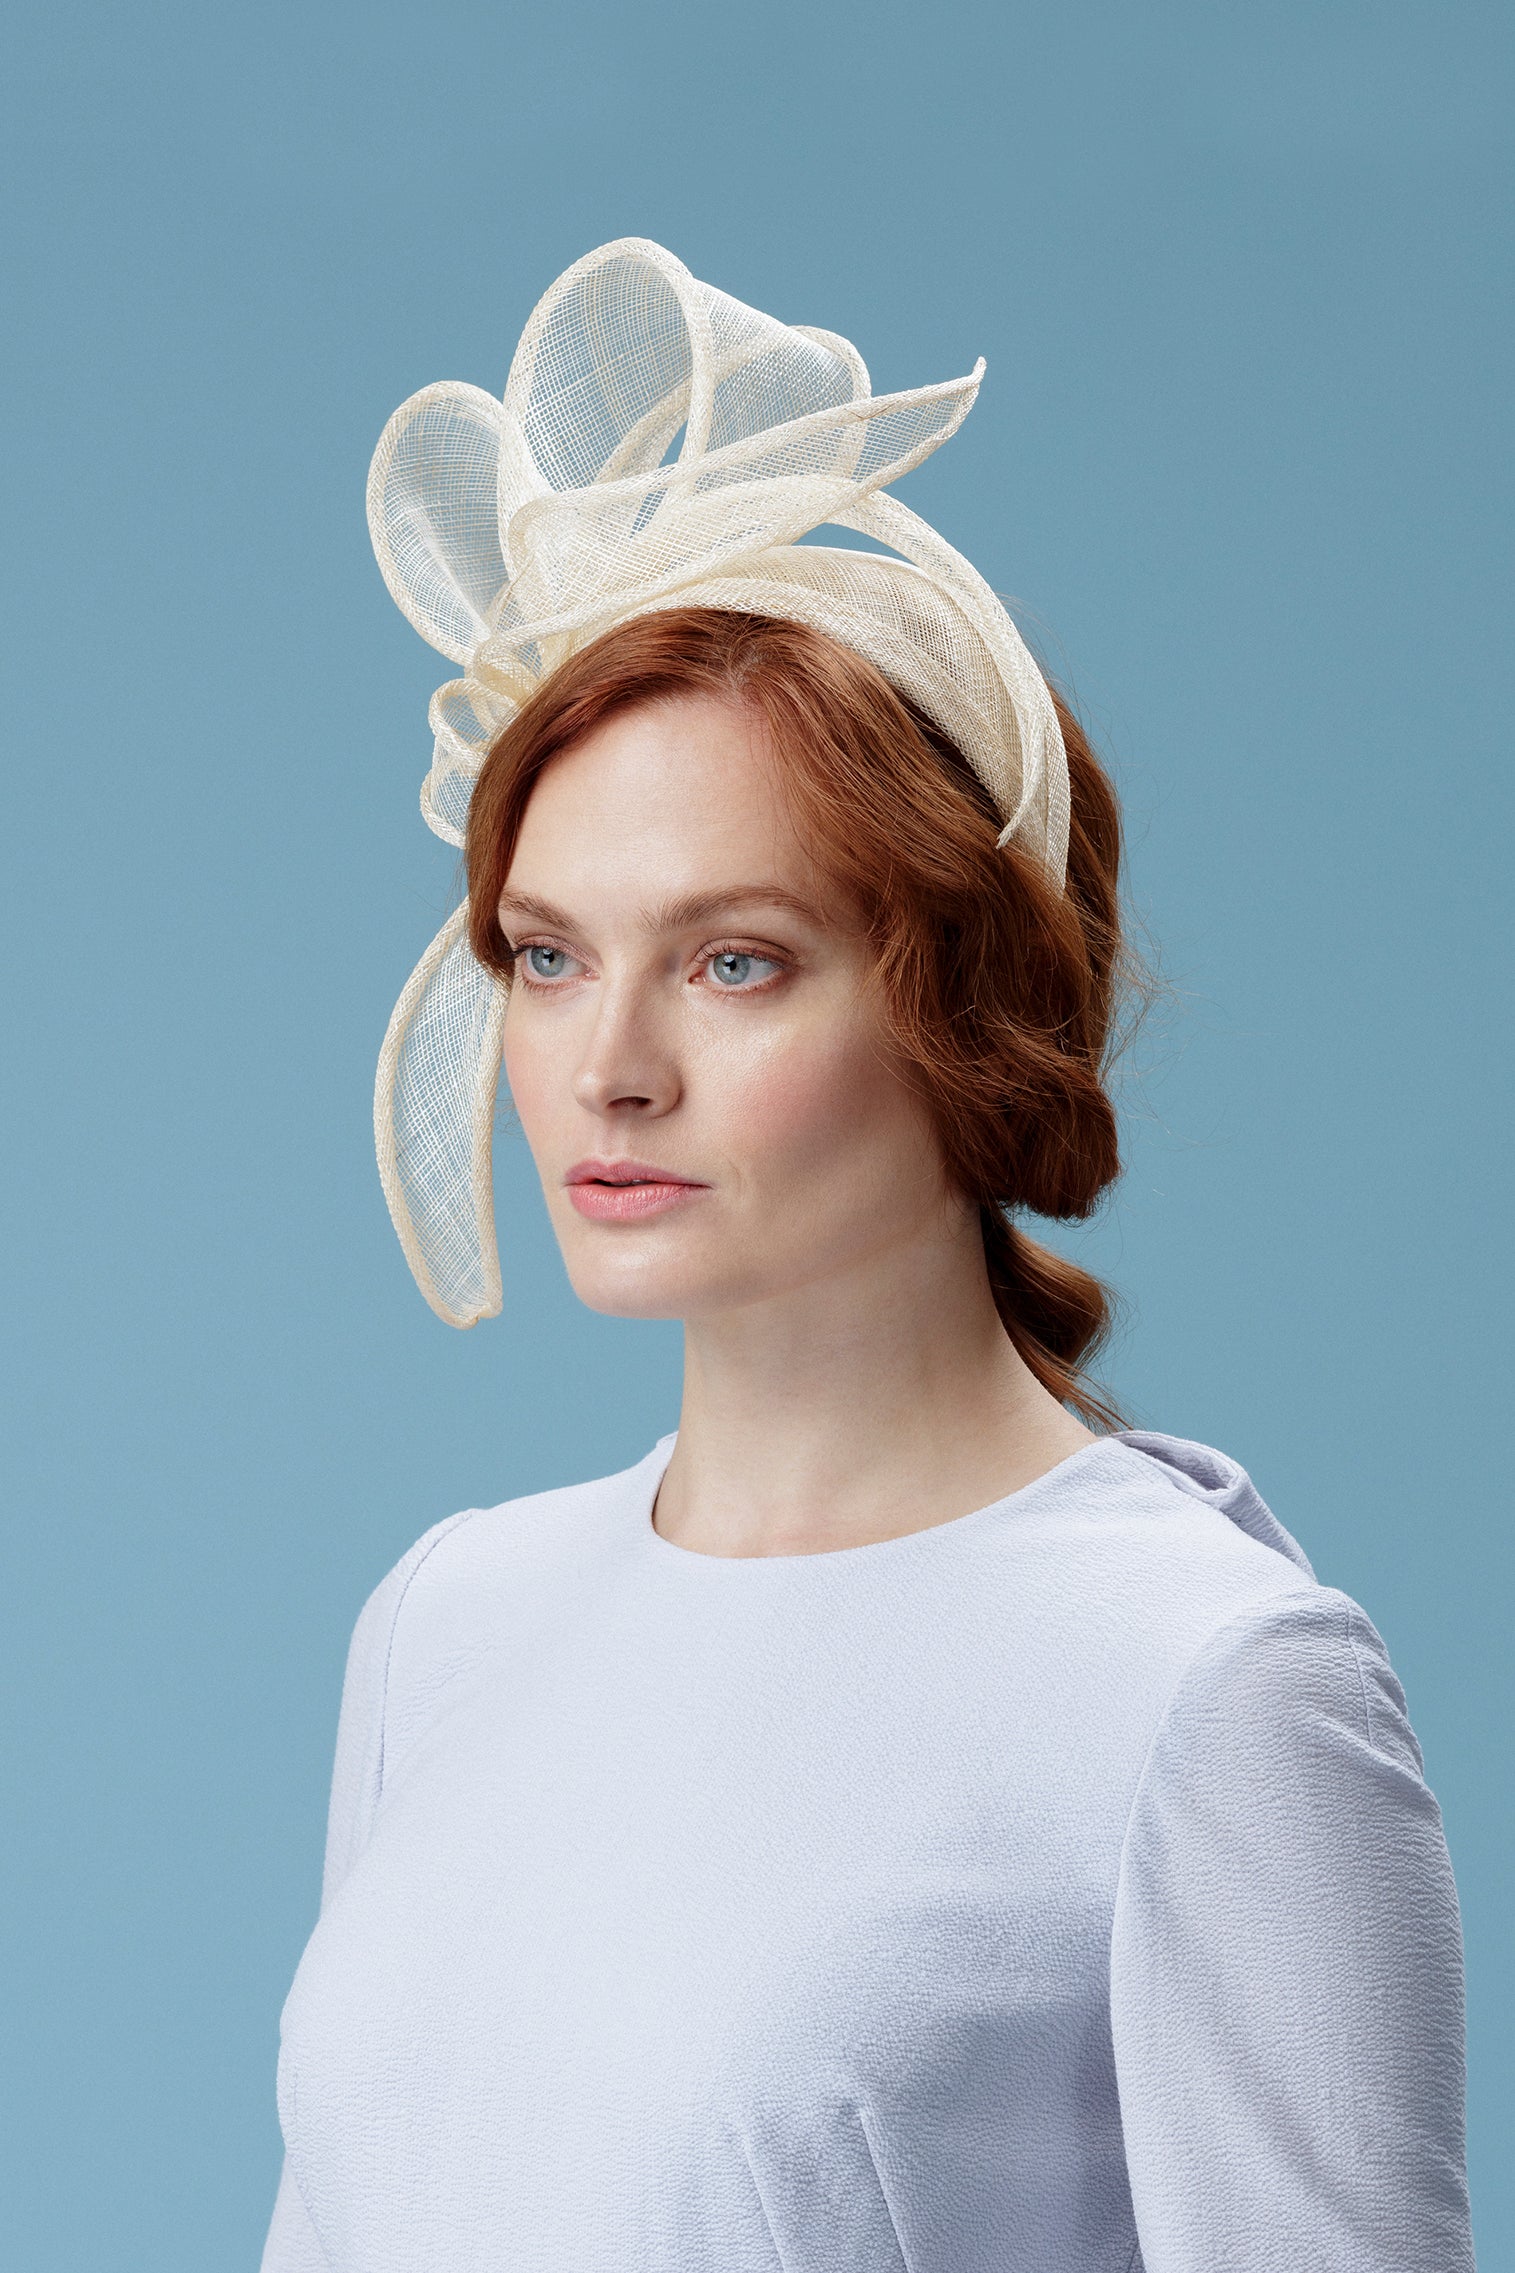 Rosemary Headband - Kentucky Derby Hats for Women - Lock & Co. Hatters London UK